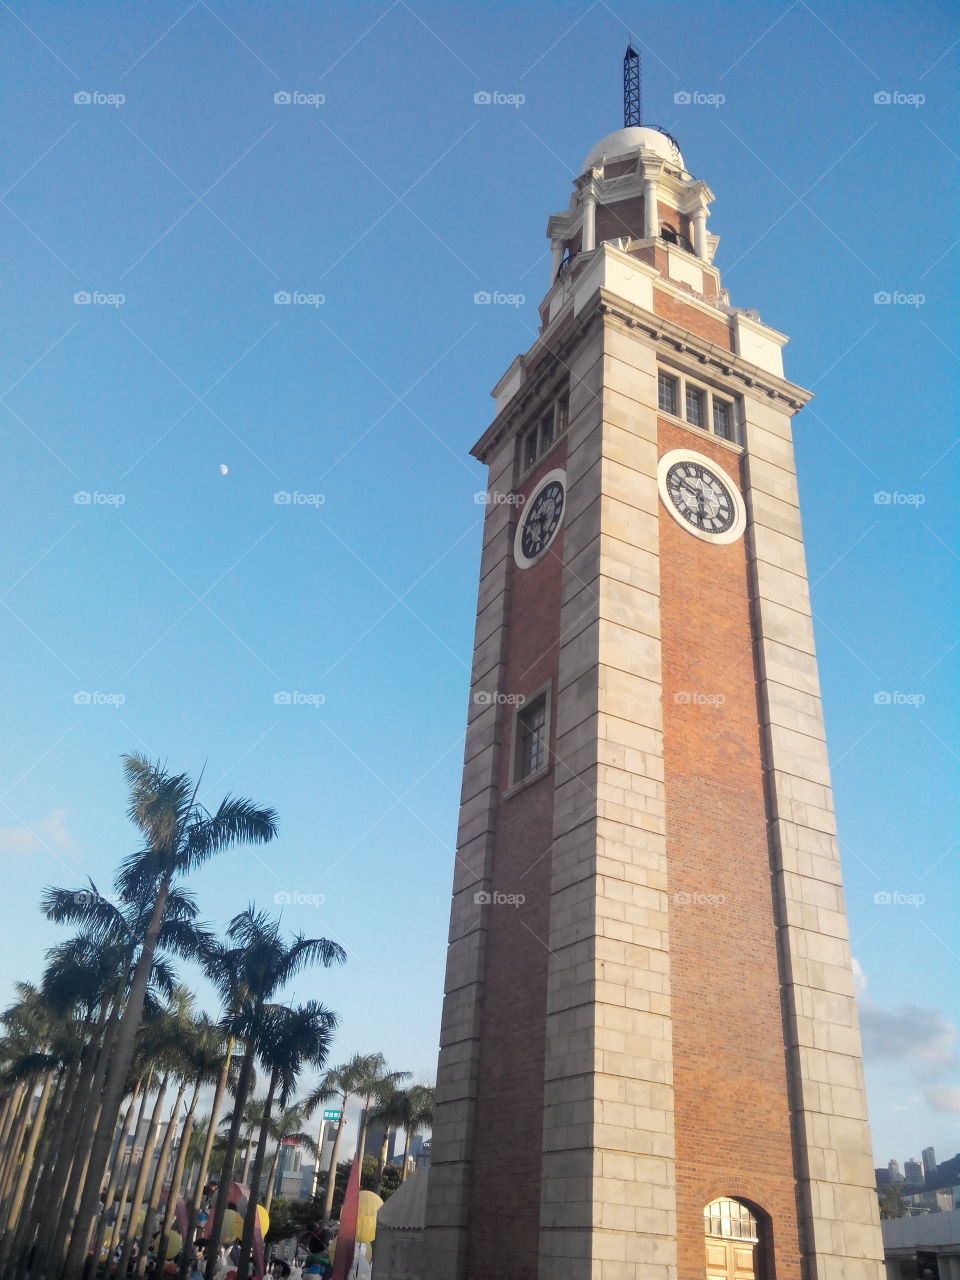 clock tower in hong kong. clock tower near exibition center